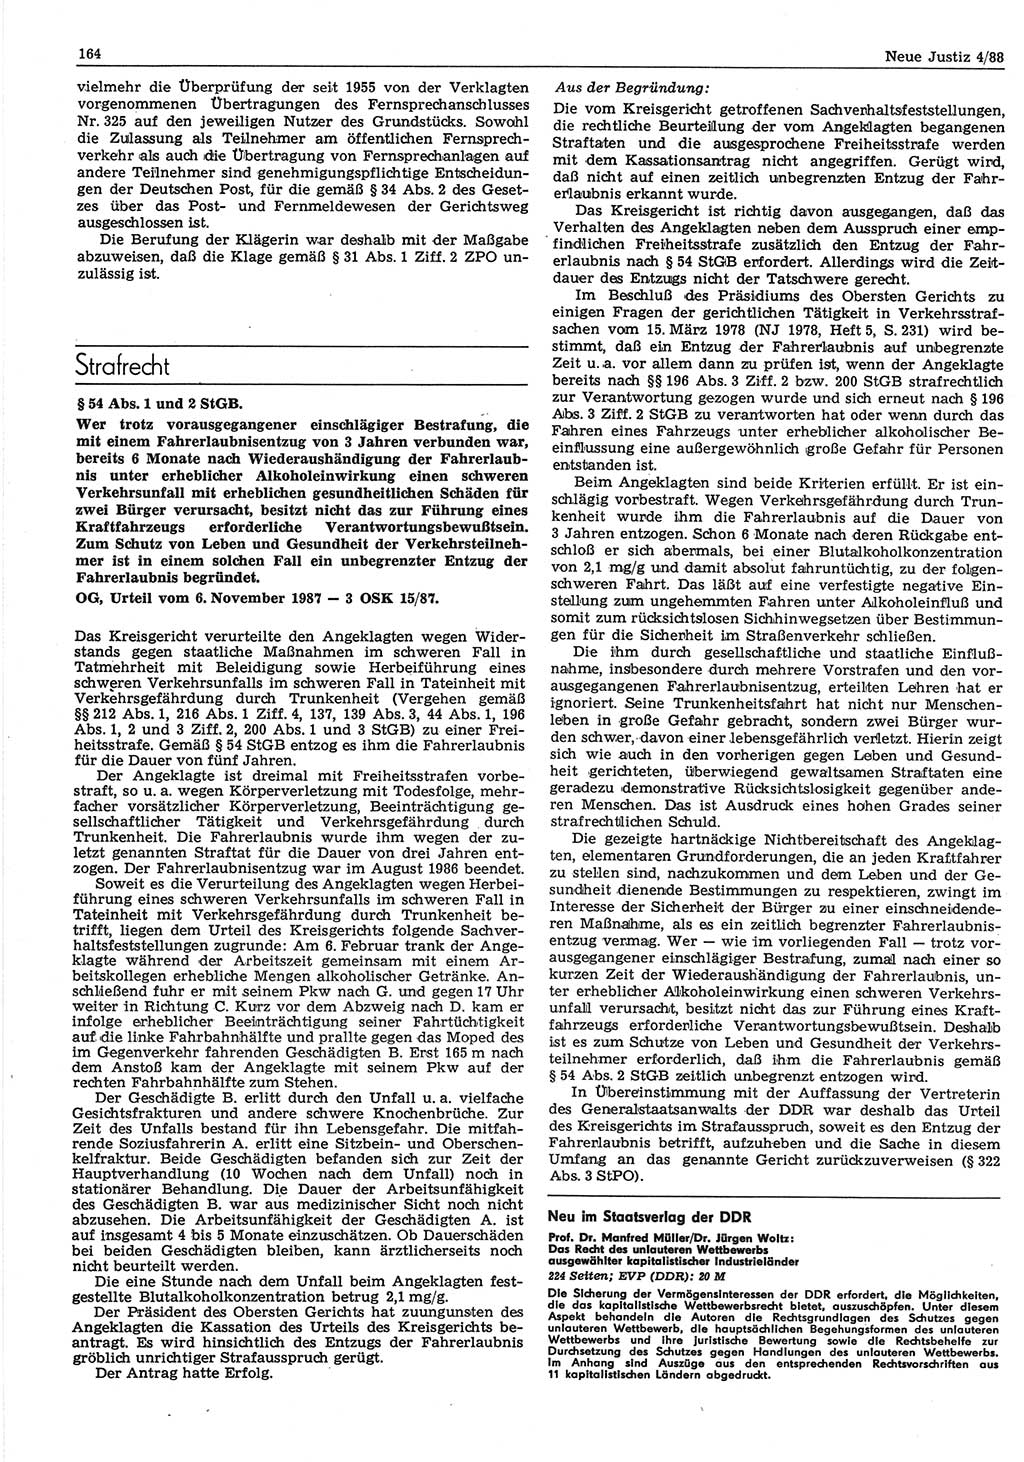 Neue Justiz (NJ), Zeitschrift für sozialistisches Recht und Gesetzlichkeit [Deutsche Demokratische Republik (DDR)], 42. Jahrgang 1988, Seite 164 (NJ DDR 1988, S. 164)